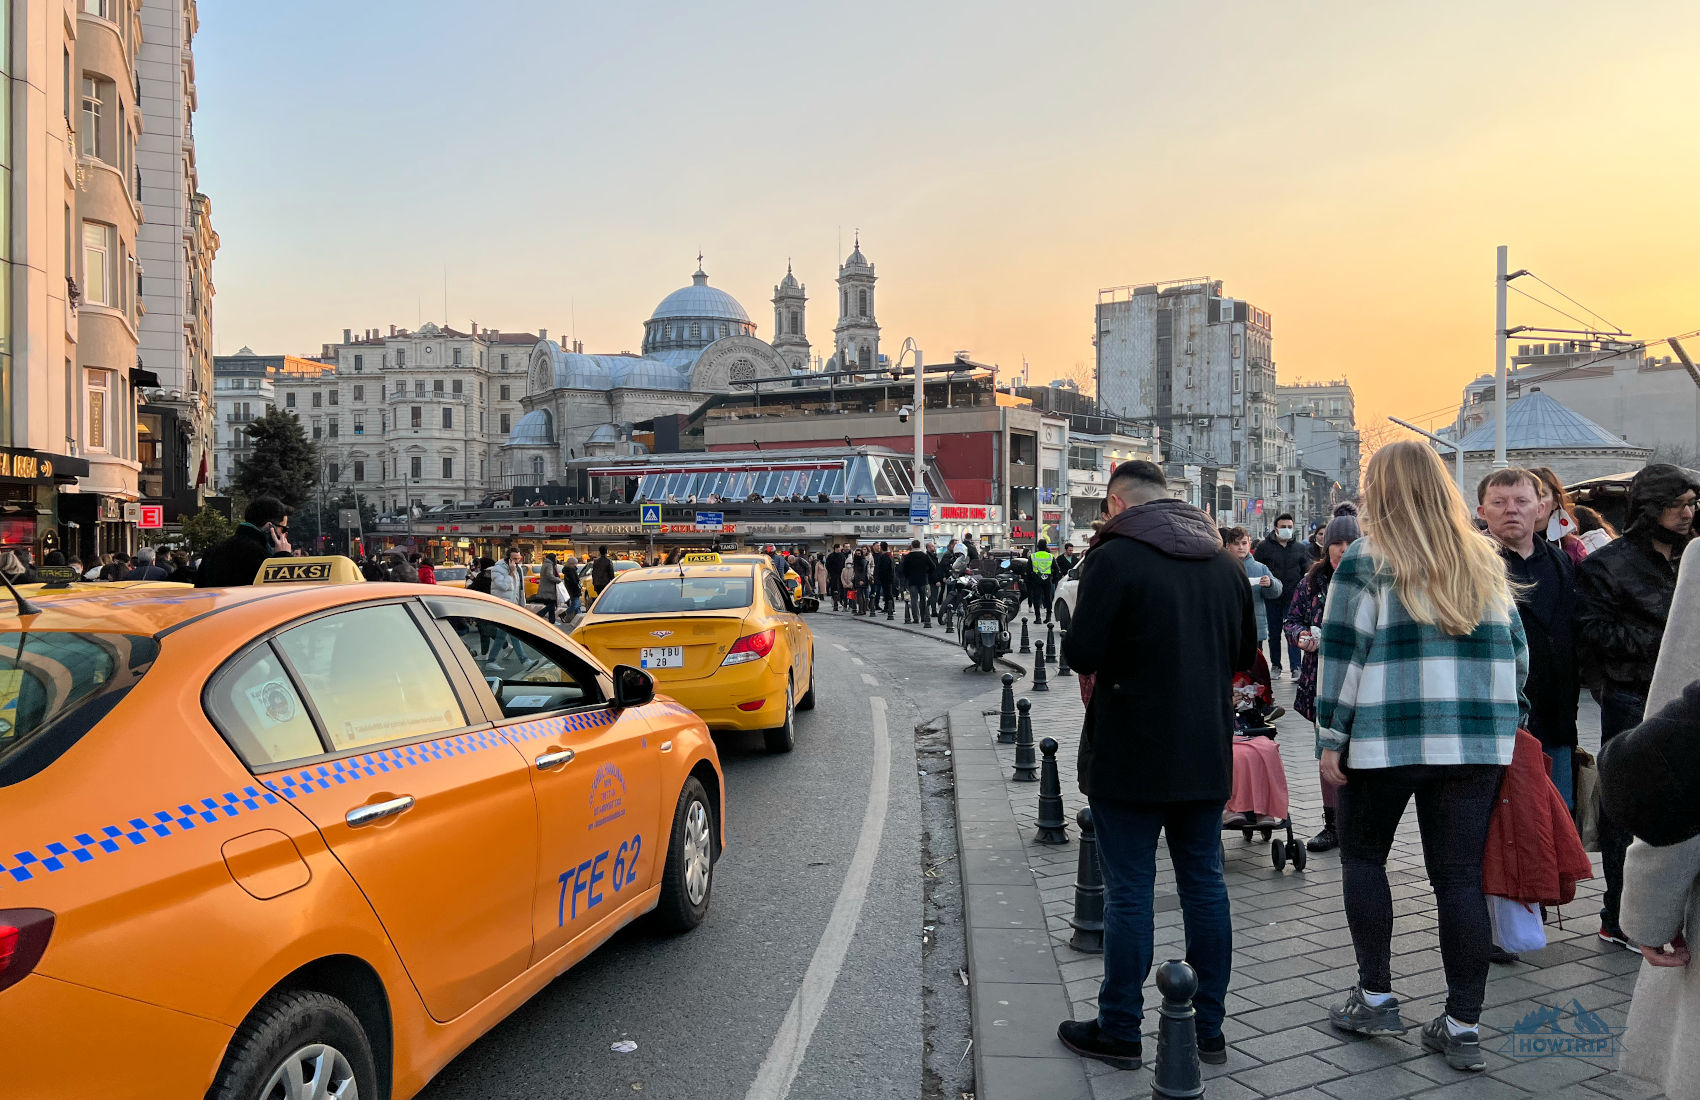 Площадь Таксим и такси